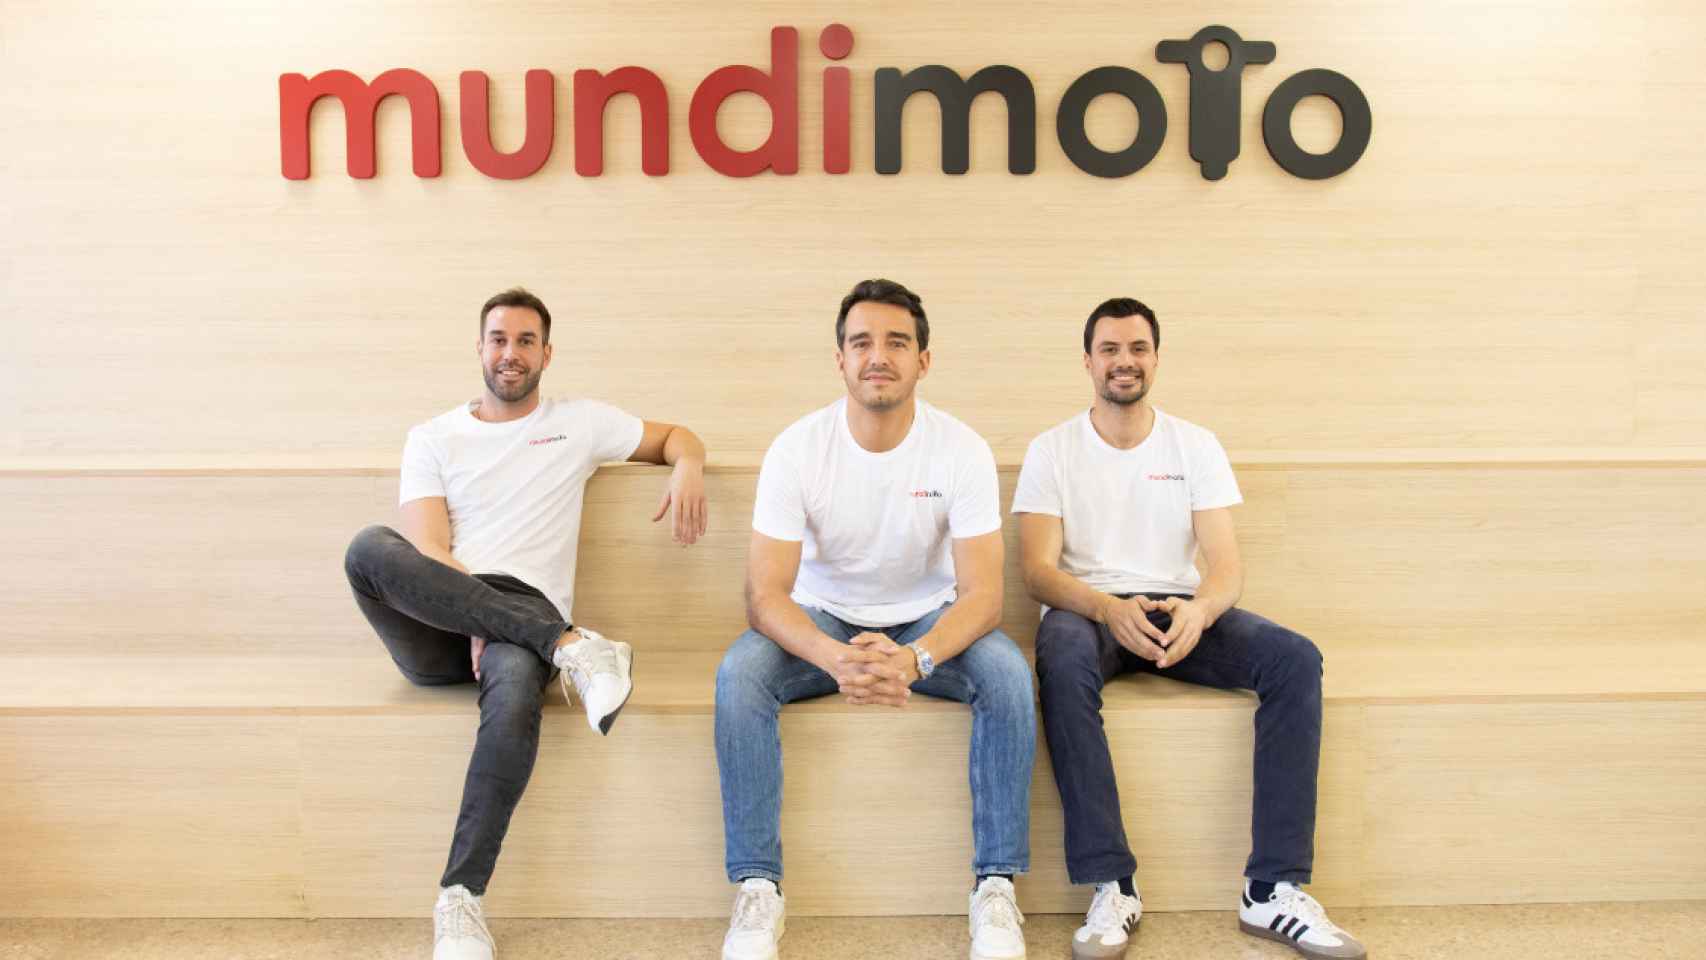 Alberto Fossas, Josep Talavera y Alex Lopera, fundadores de Mundimoto